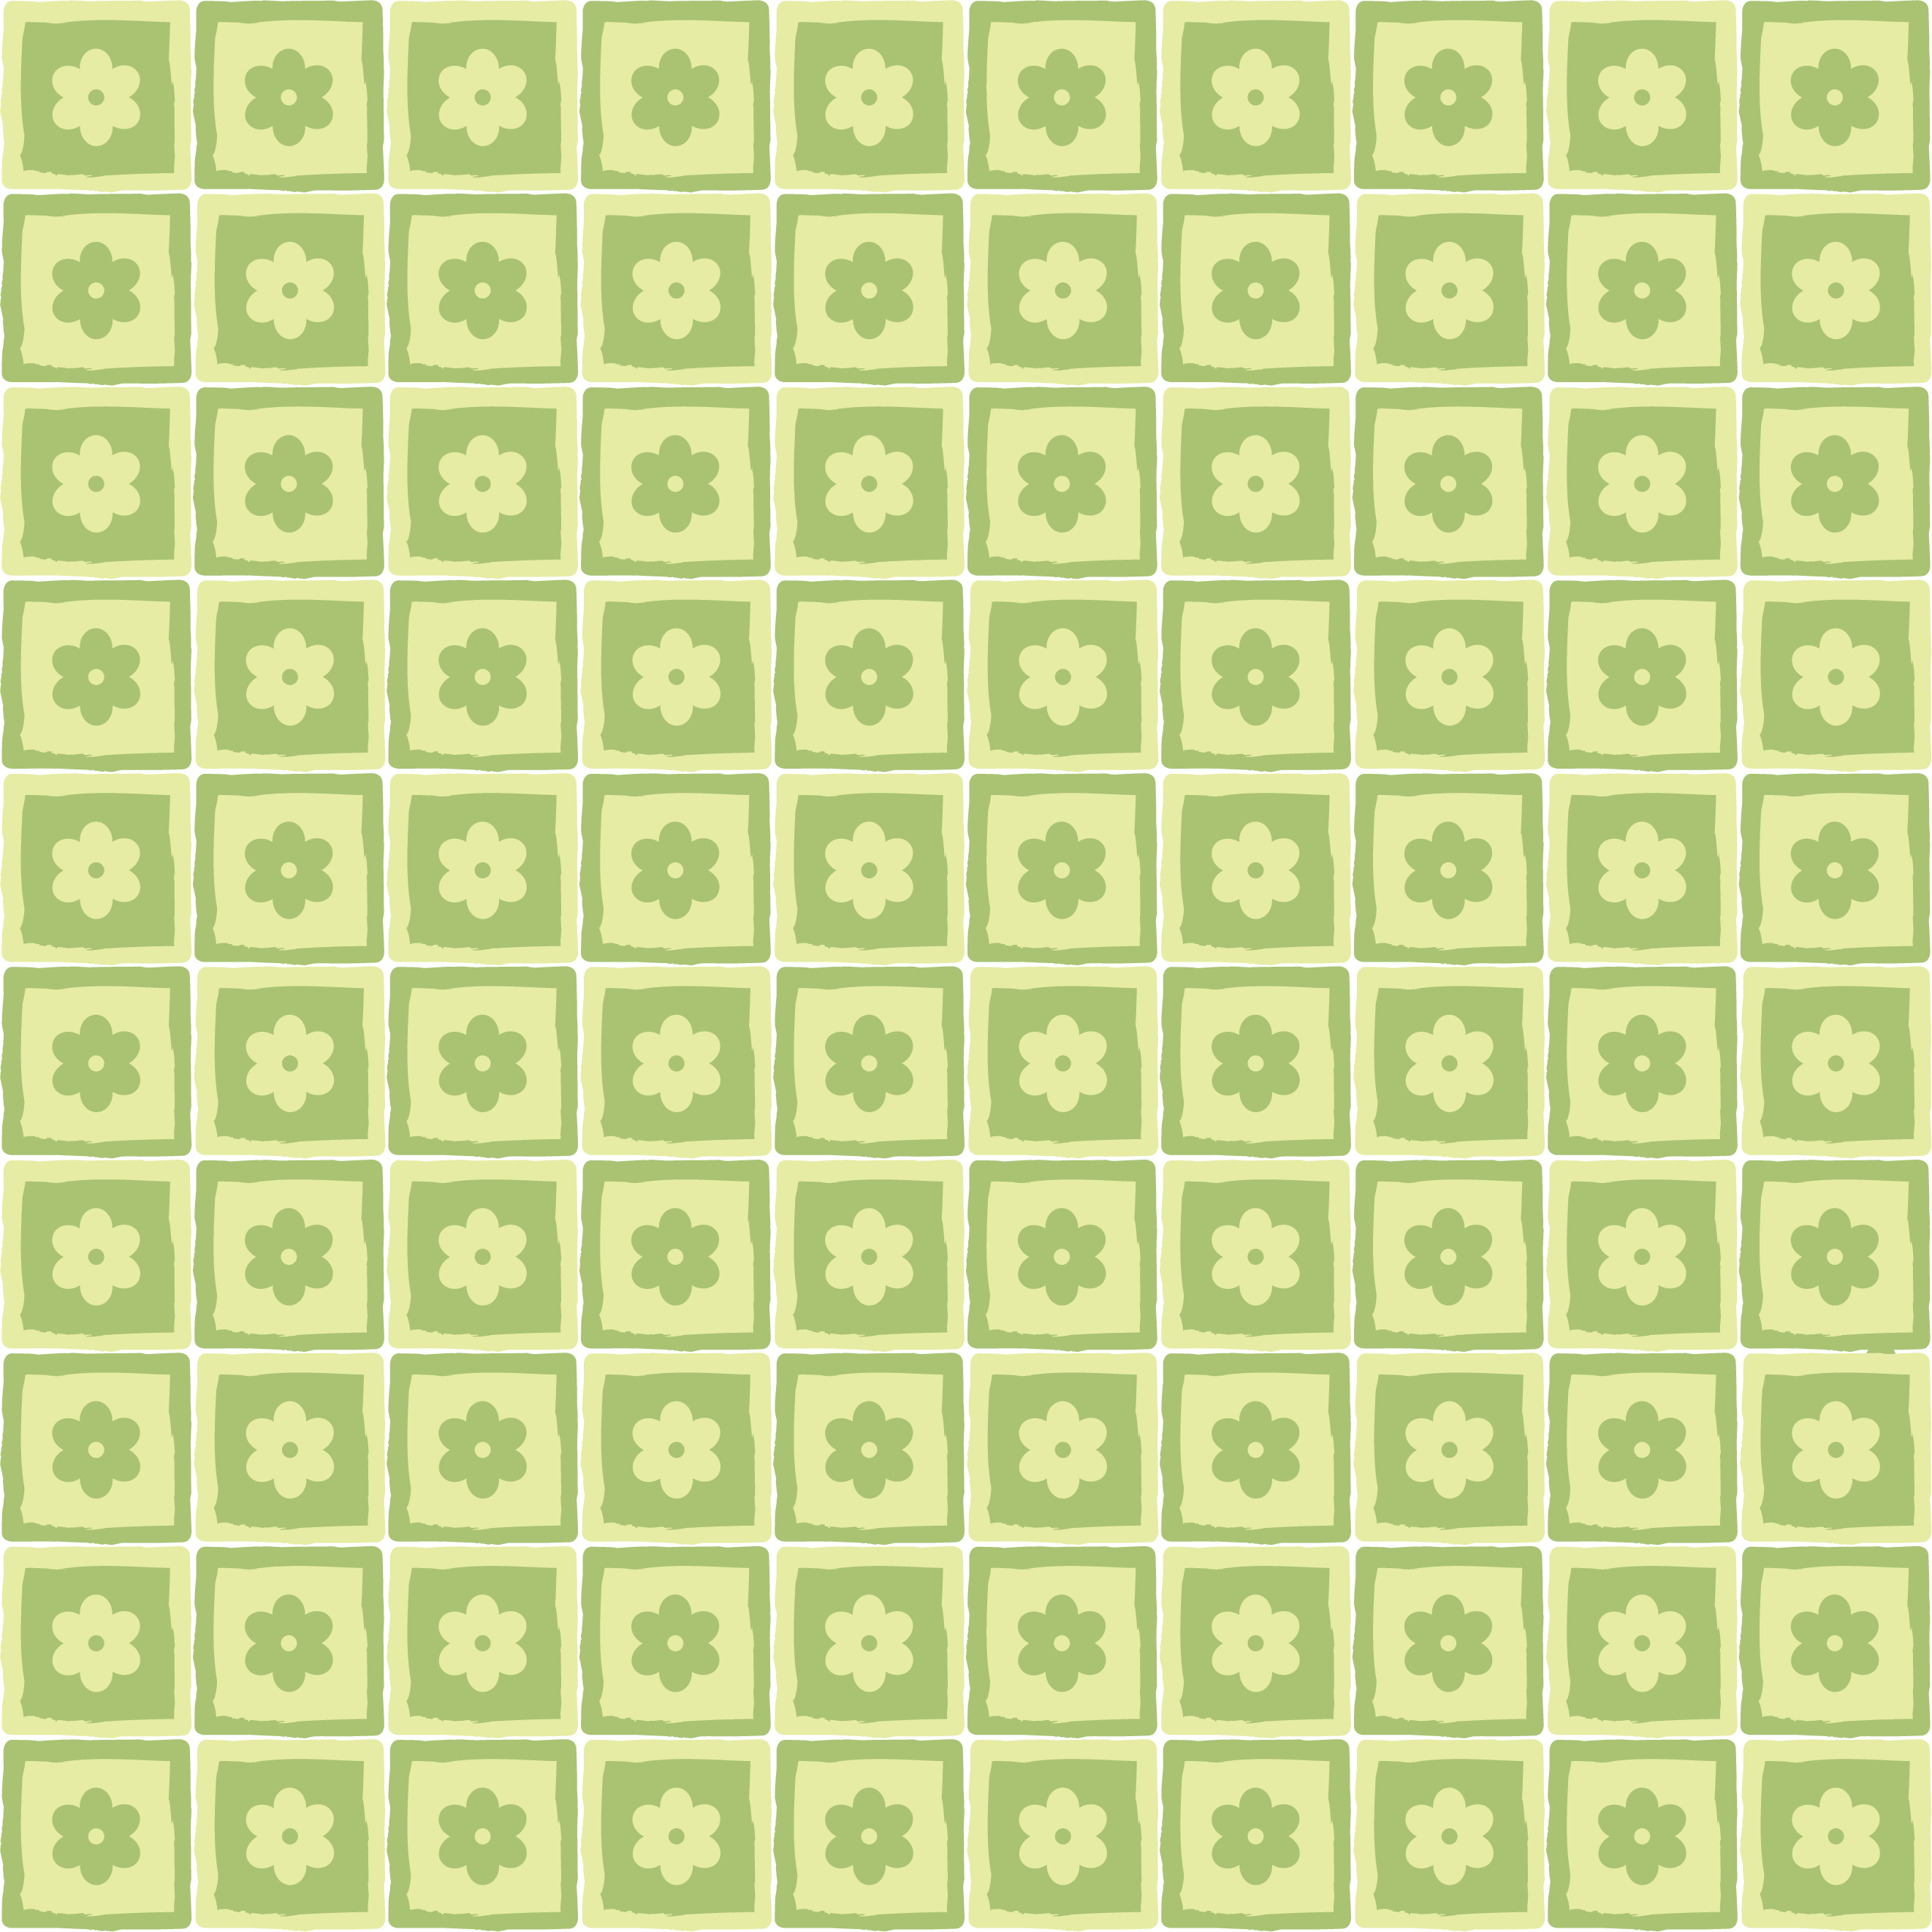 壁紙 背景イラスト 花の模様 柄 パターン No 086 緑 四角枠